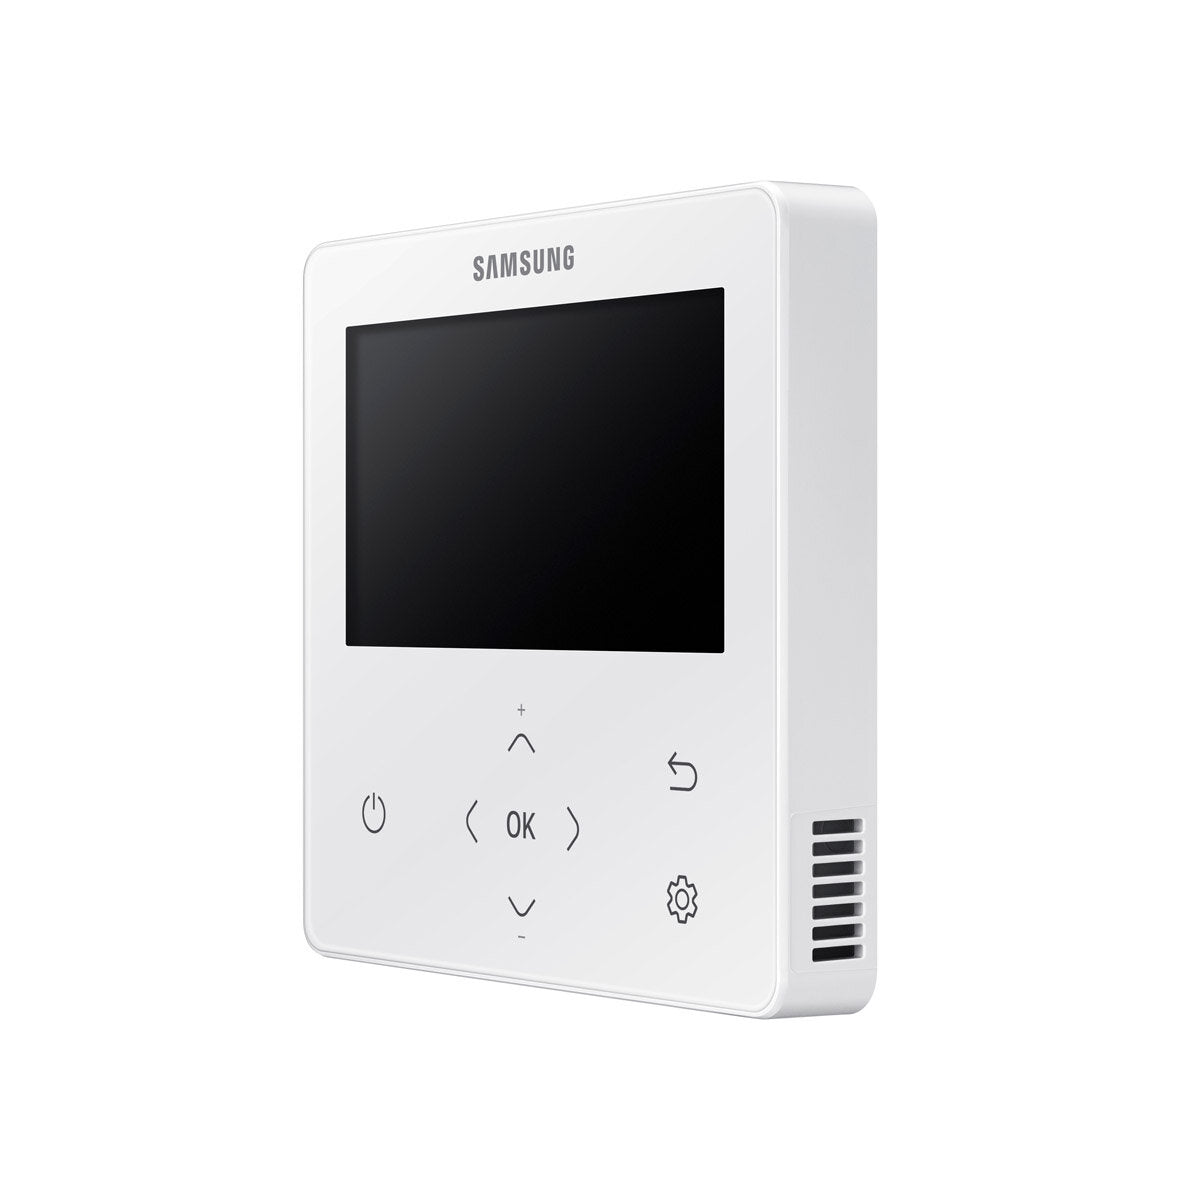 Samsung Climatiseur Cassette WindFree 1 Way penta split 9000 + 9000 + 12000 + 12000 + 12000 BTU inverter A++ unité extérieure 10.0 kW